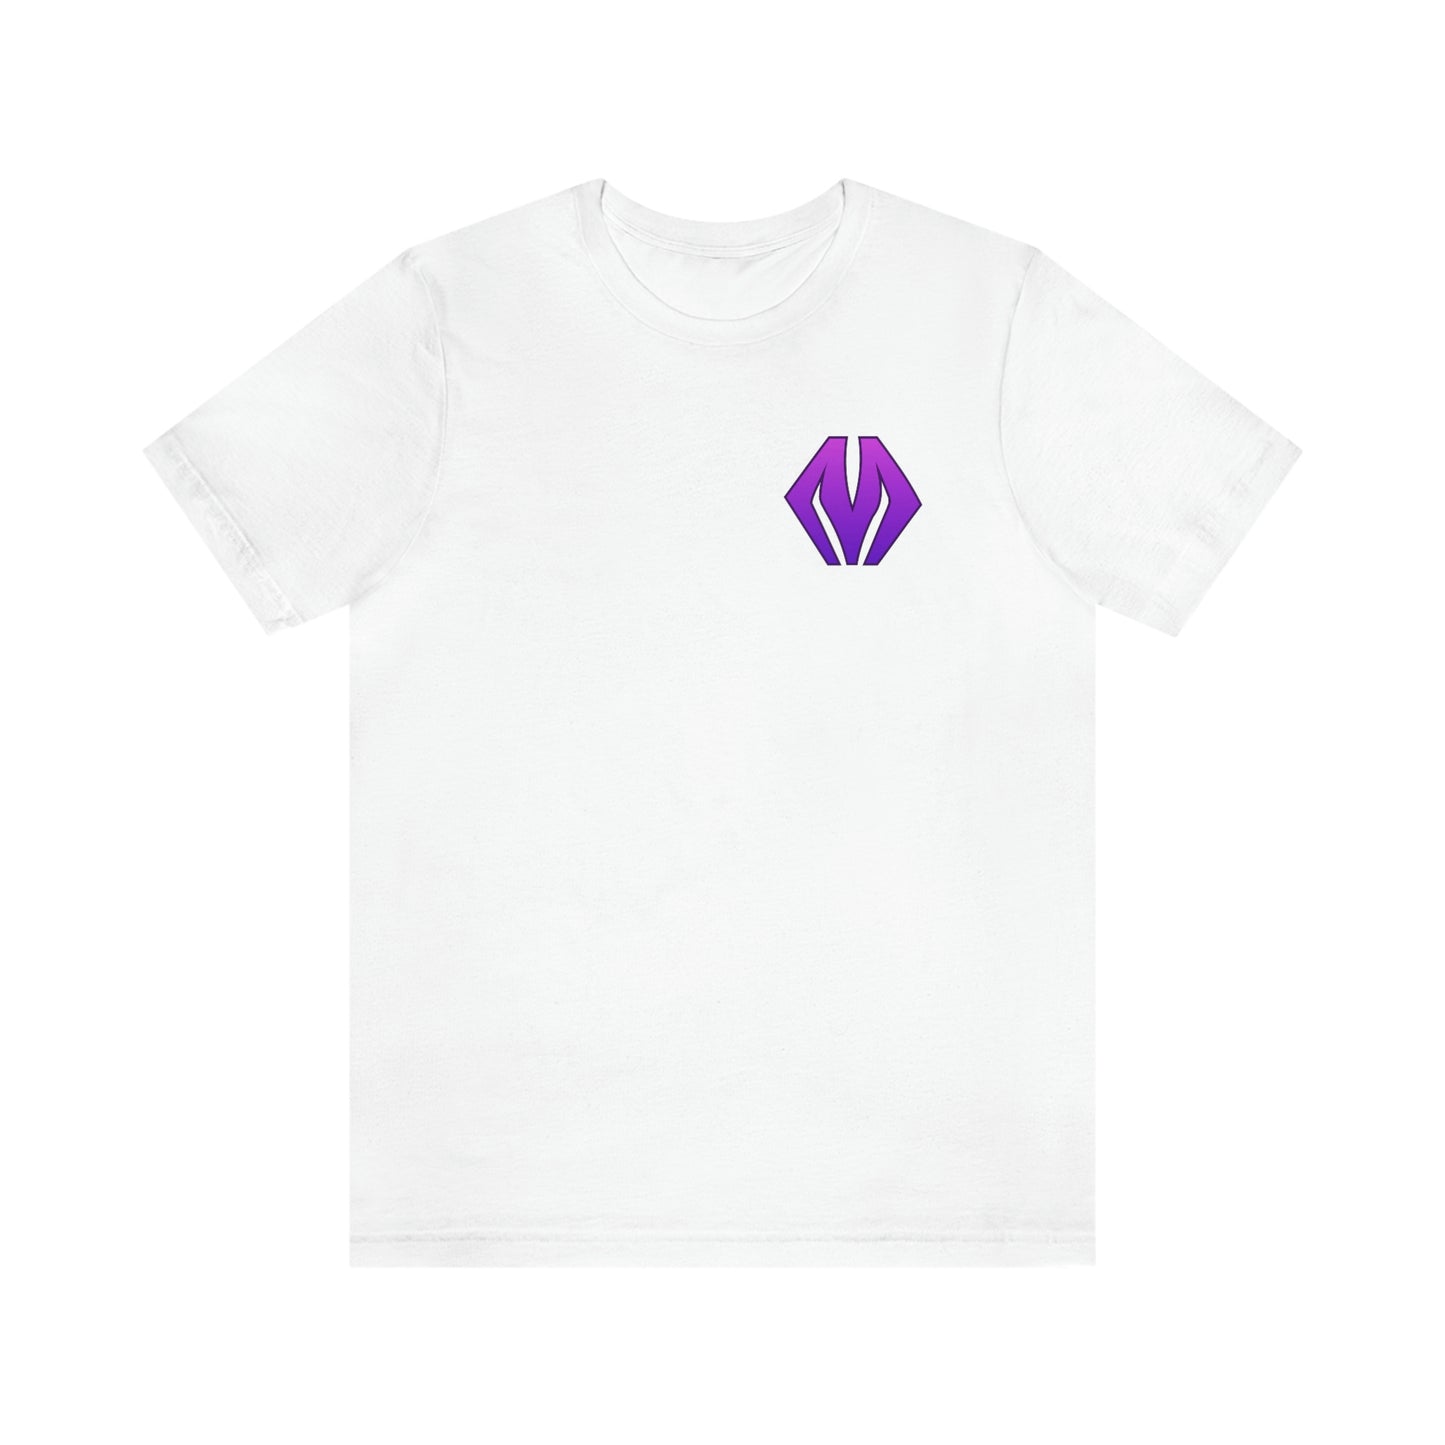 M logo / MA logo - Unisex Jersey Short Sleeve Shirt